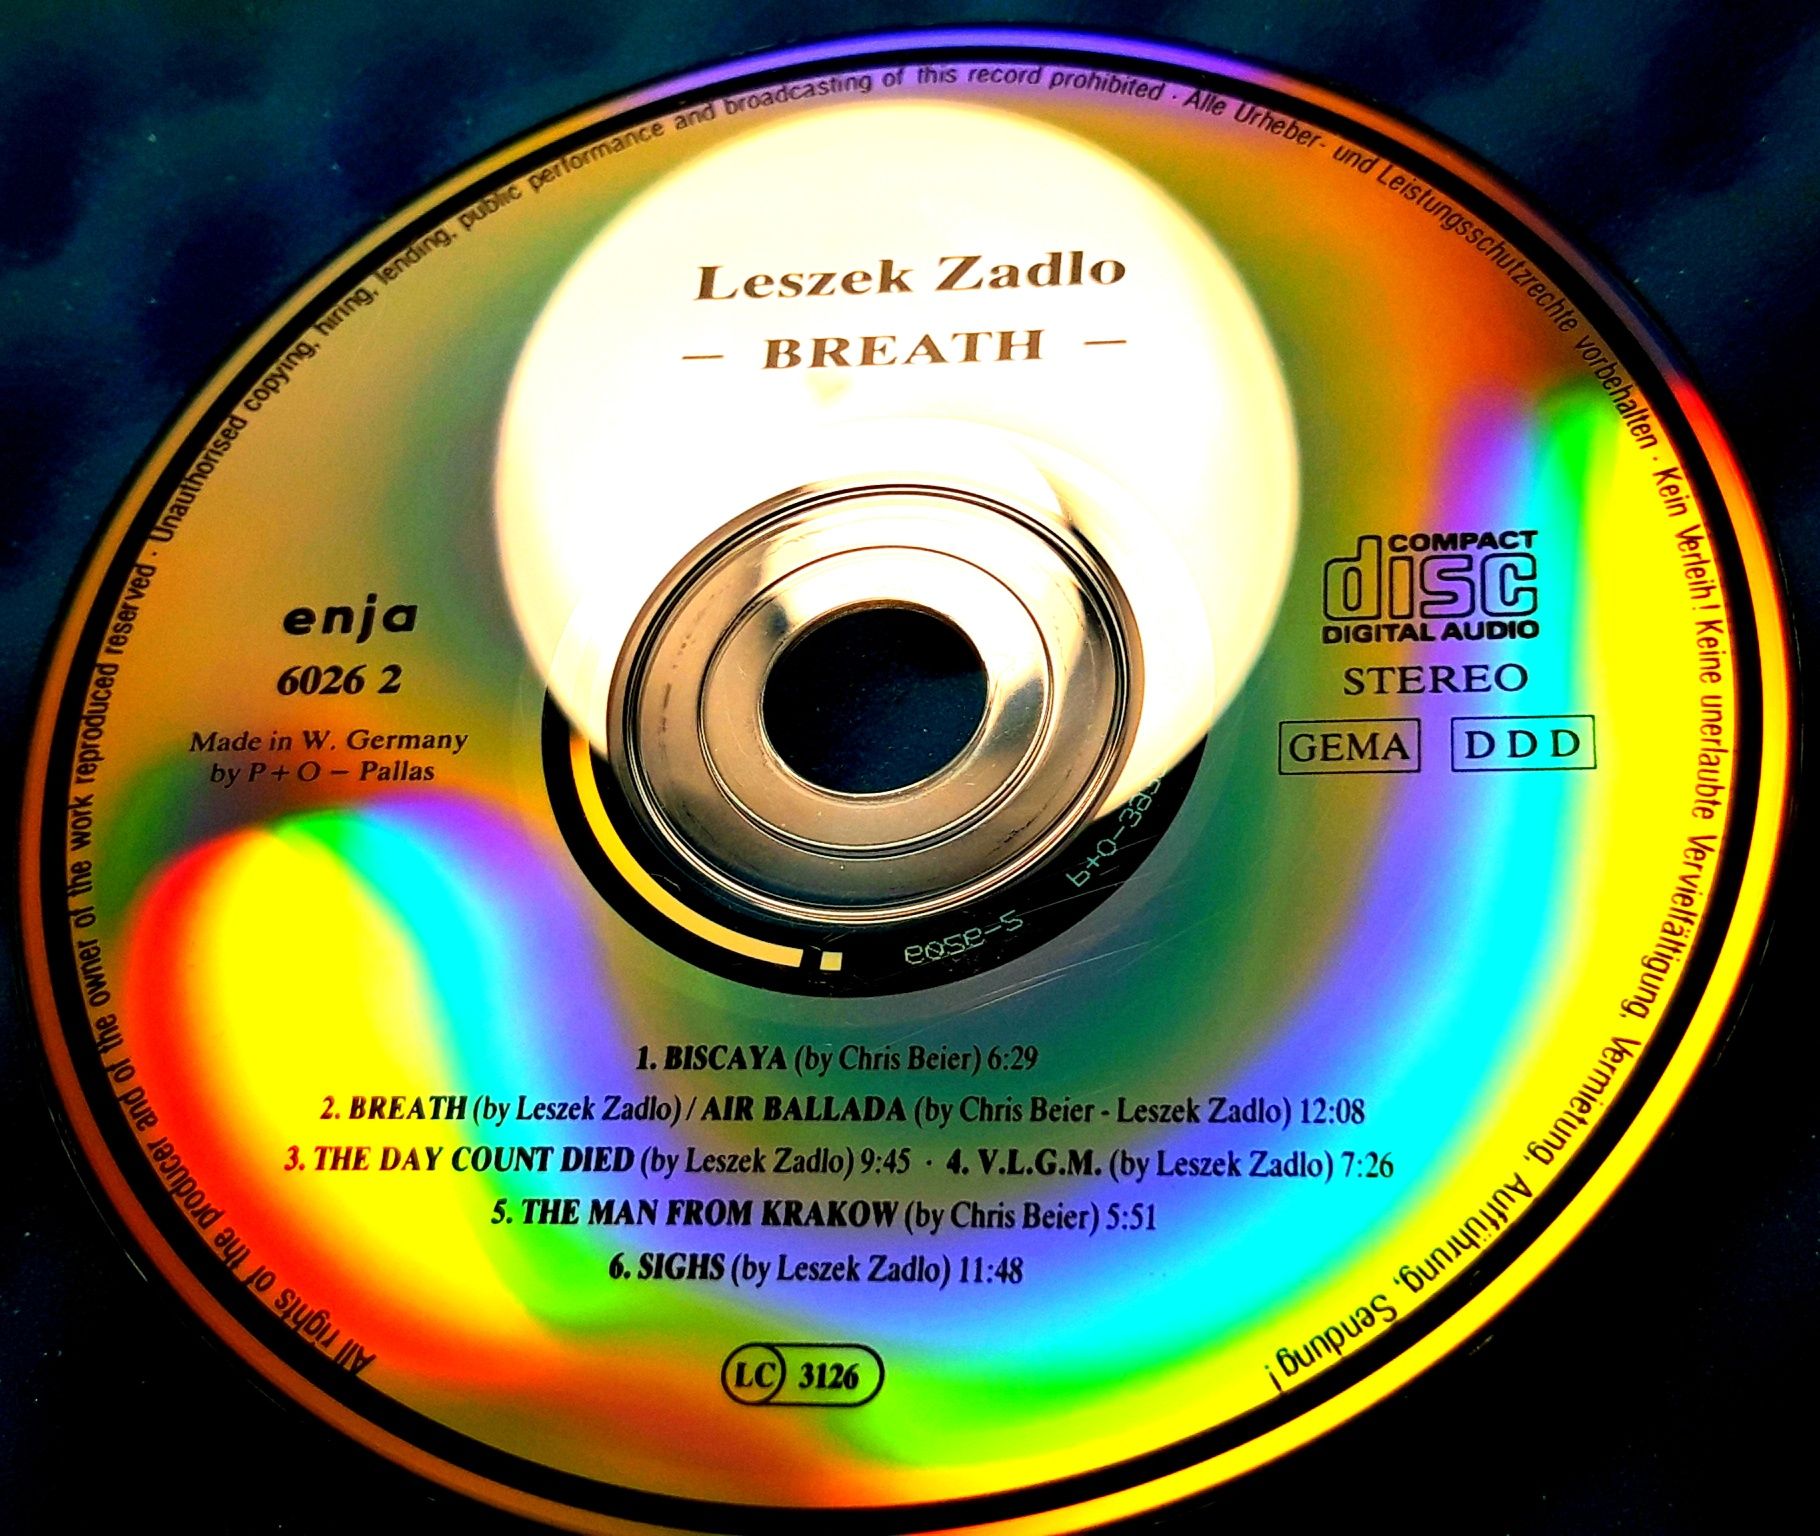 Leszek Zadlo – Breath (CD, 1989)